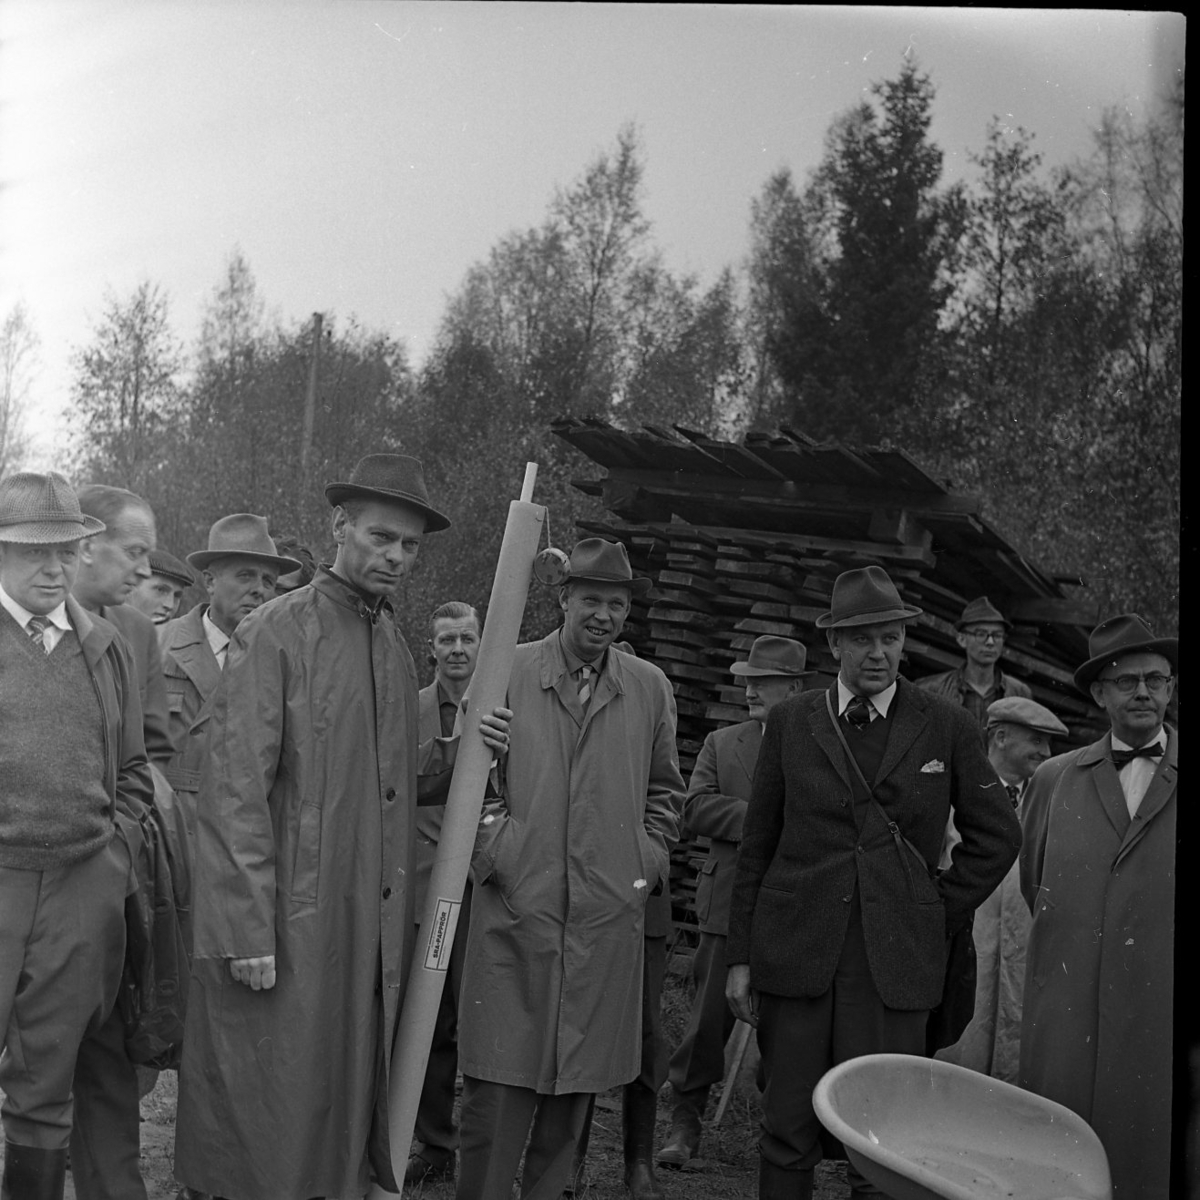 Skogsdag Örserums brunn 1961. Flera män står och tittar på någonting utanför bild. De bär rockar eller regnjackor. Bakom dem står en stapel med bräder.